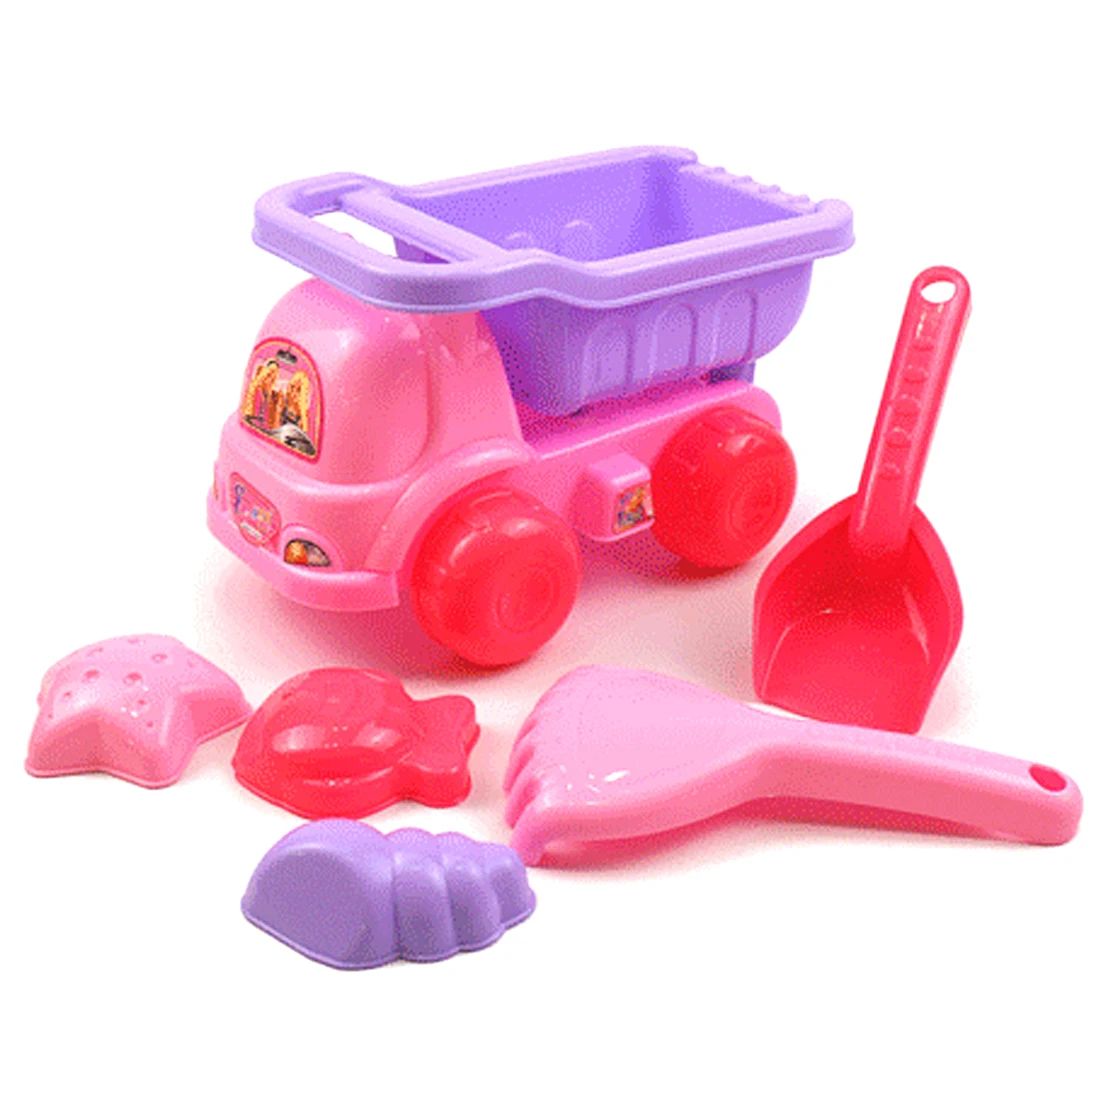 12 шт пляжные игрушки игры с песком набор образовательных игрушка с маленькой принцессы пляжный багги для детей